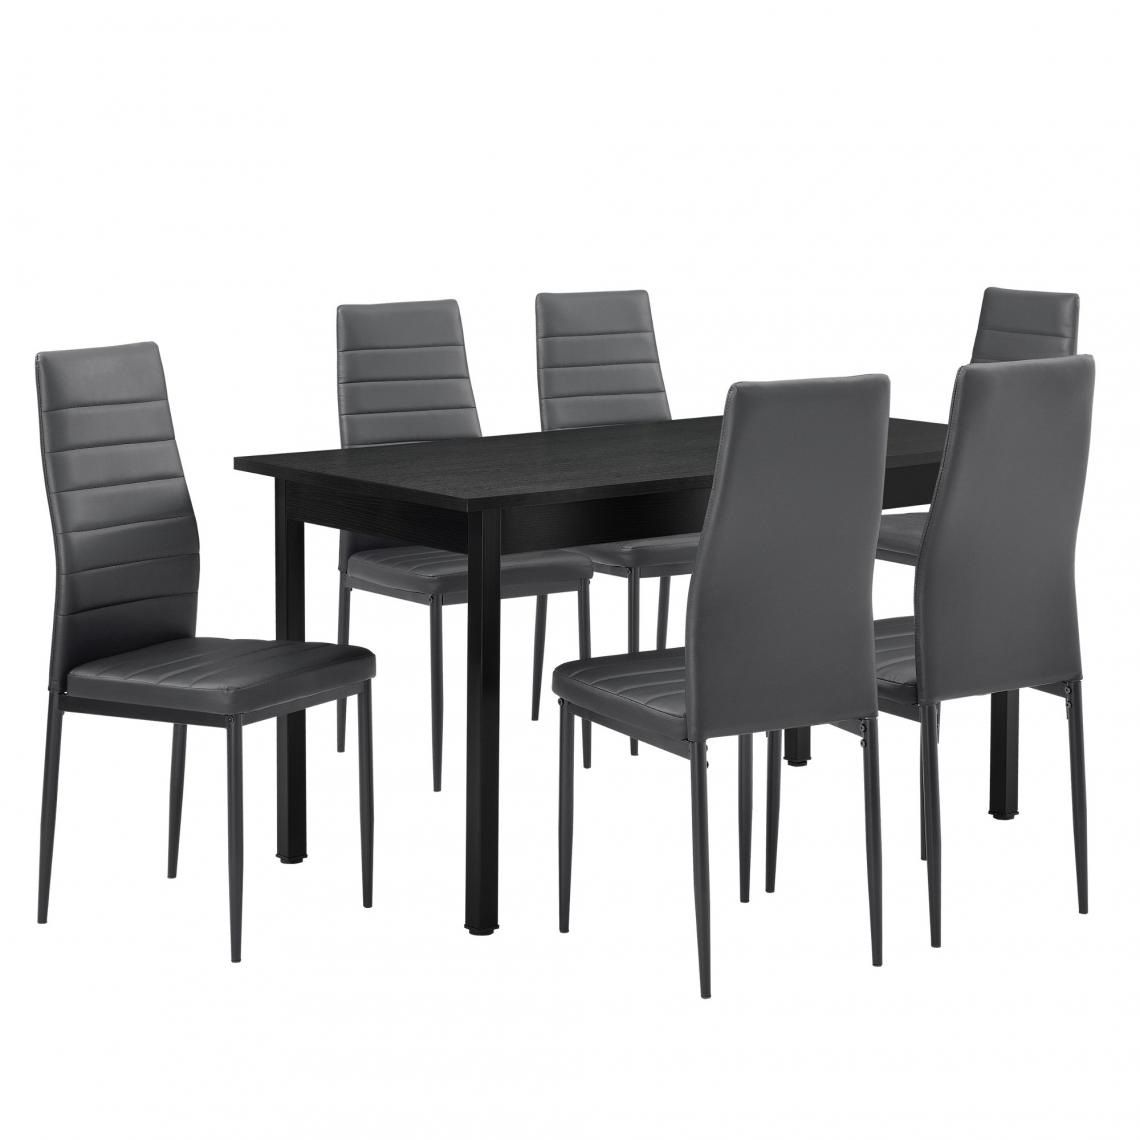 Helloshop26 - Table à manger gris 140cm x 60cm x 75cm + Chaises gris 96 cm x 43cm 03_0004077 - Tables à manger